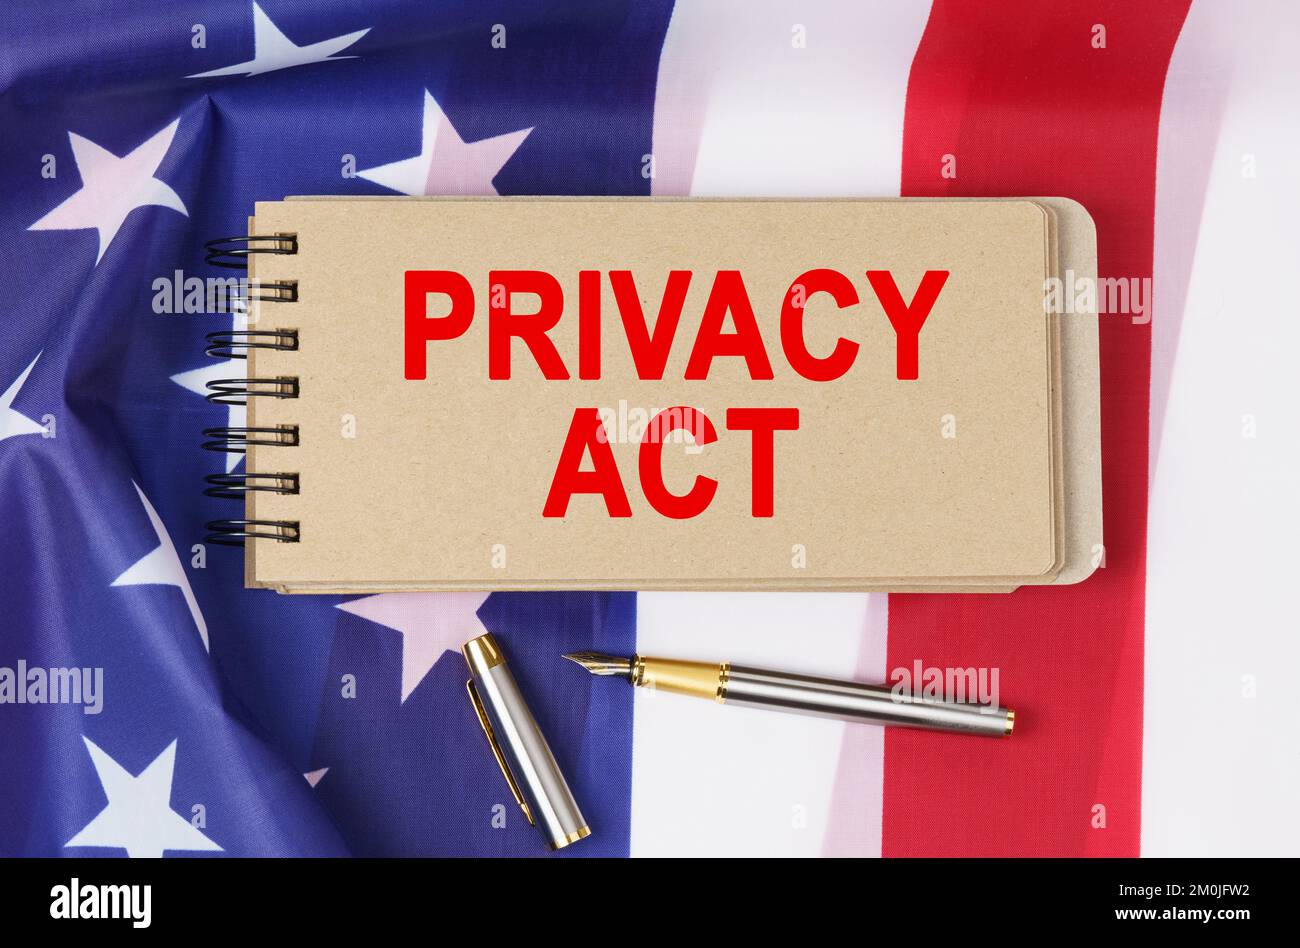 Recht und Ordnung. Vor dem Hintergrund der Flagge der Vereinigten Staaten von Amerika liegt ein Notizbuch mit der Aufschrift "PRIVACY ACT" Stockfoto